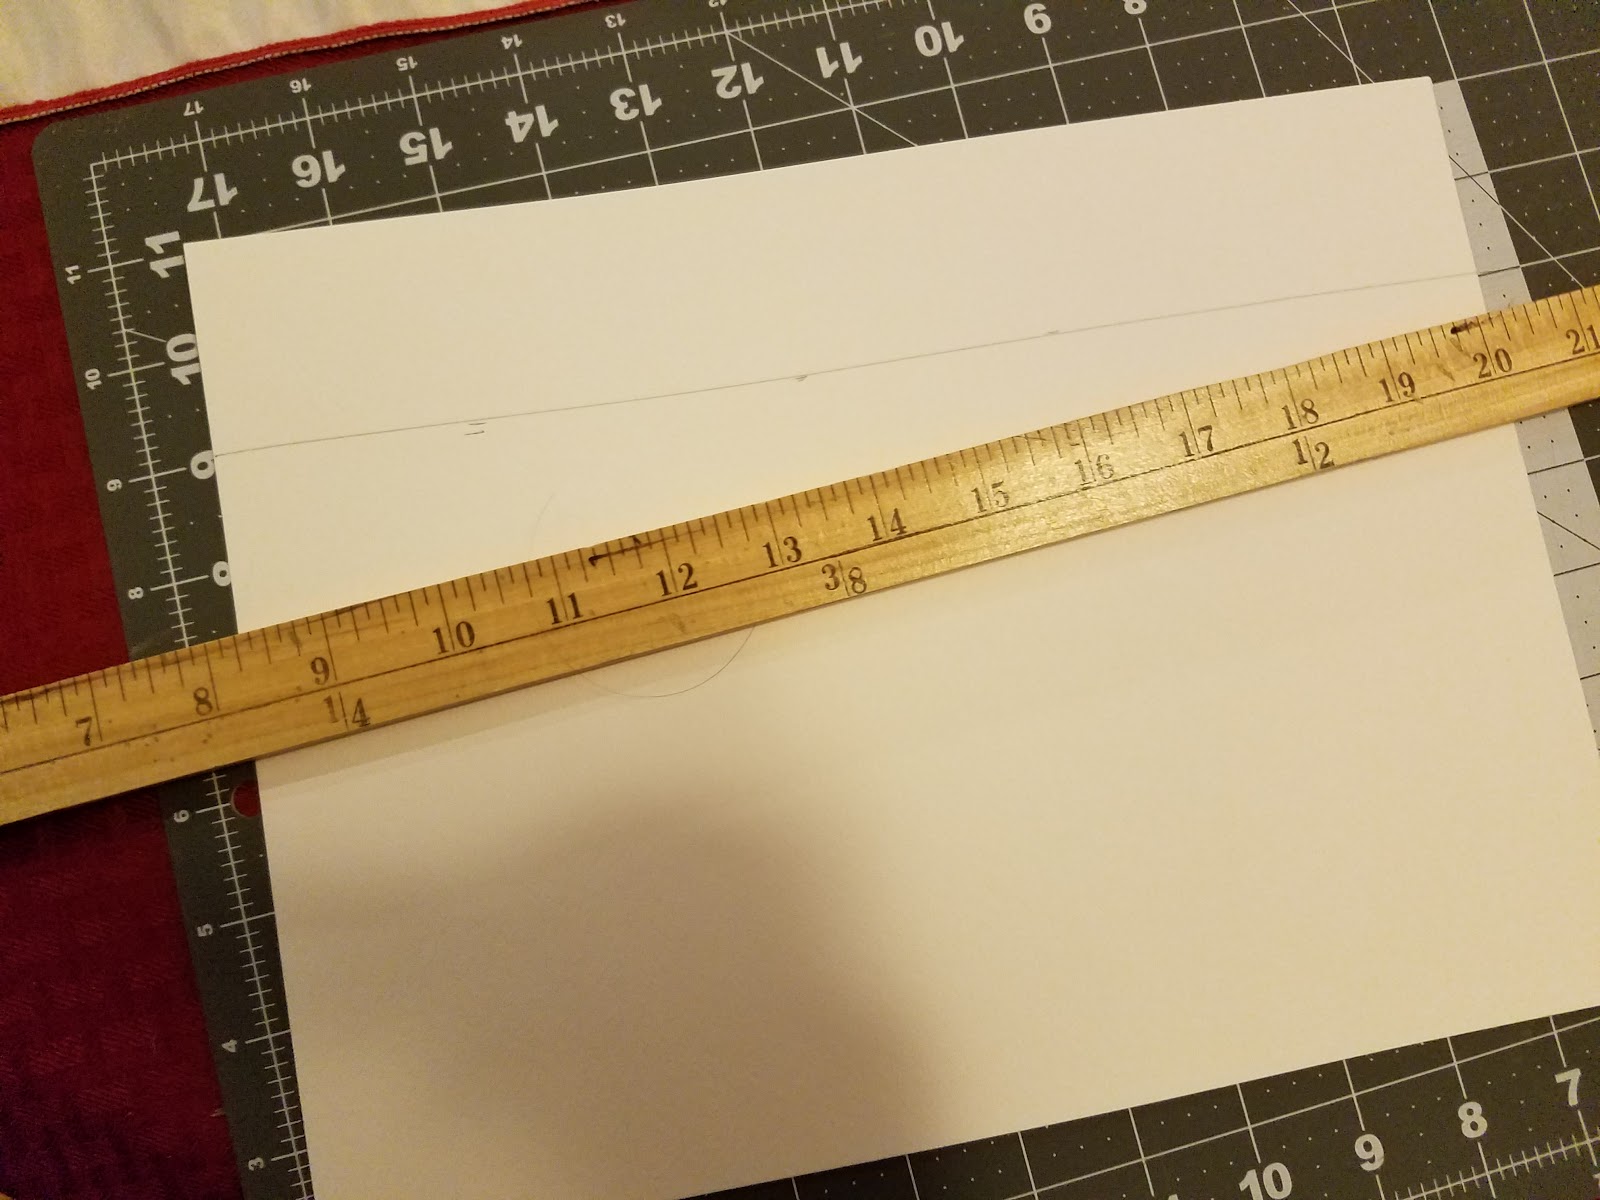 Cricut 3 X 18 Metal Cutting Ruler : Target